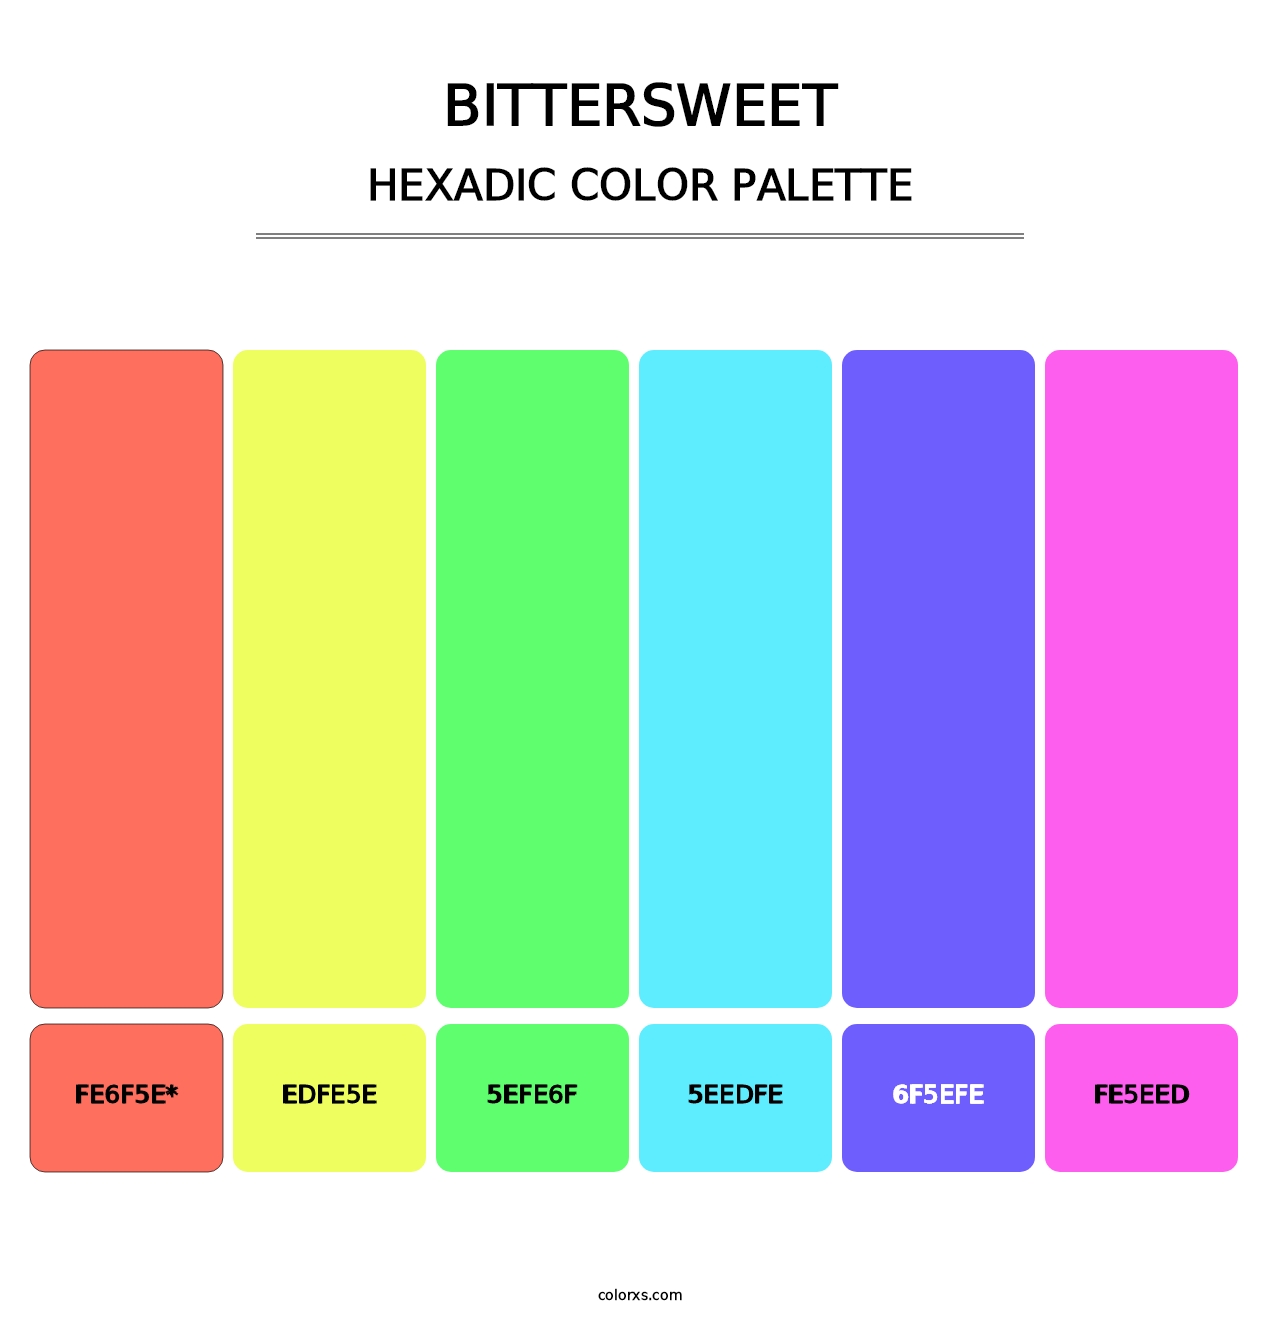 Bittersweet - Hexadic Color Palette